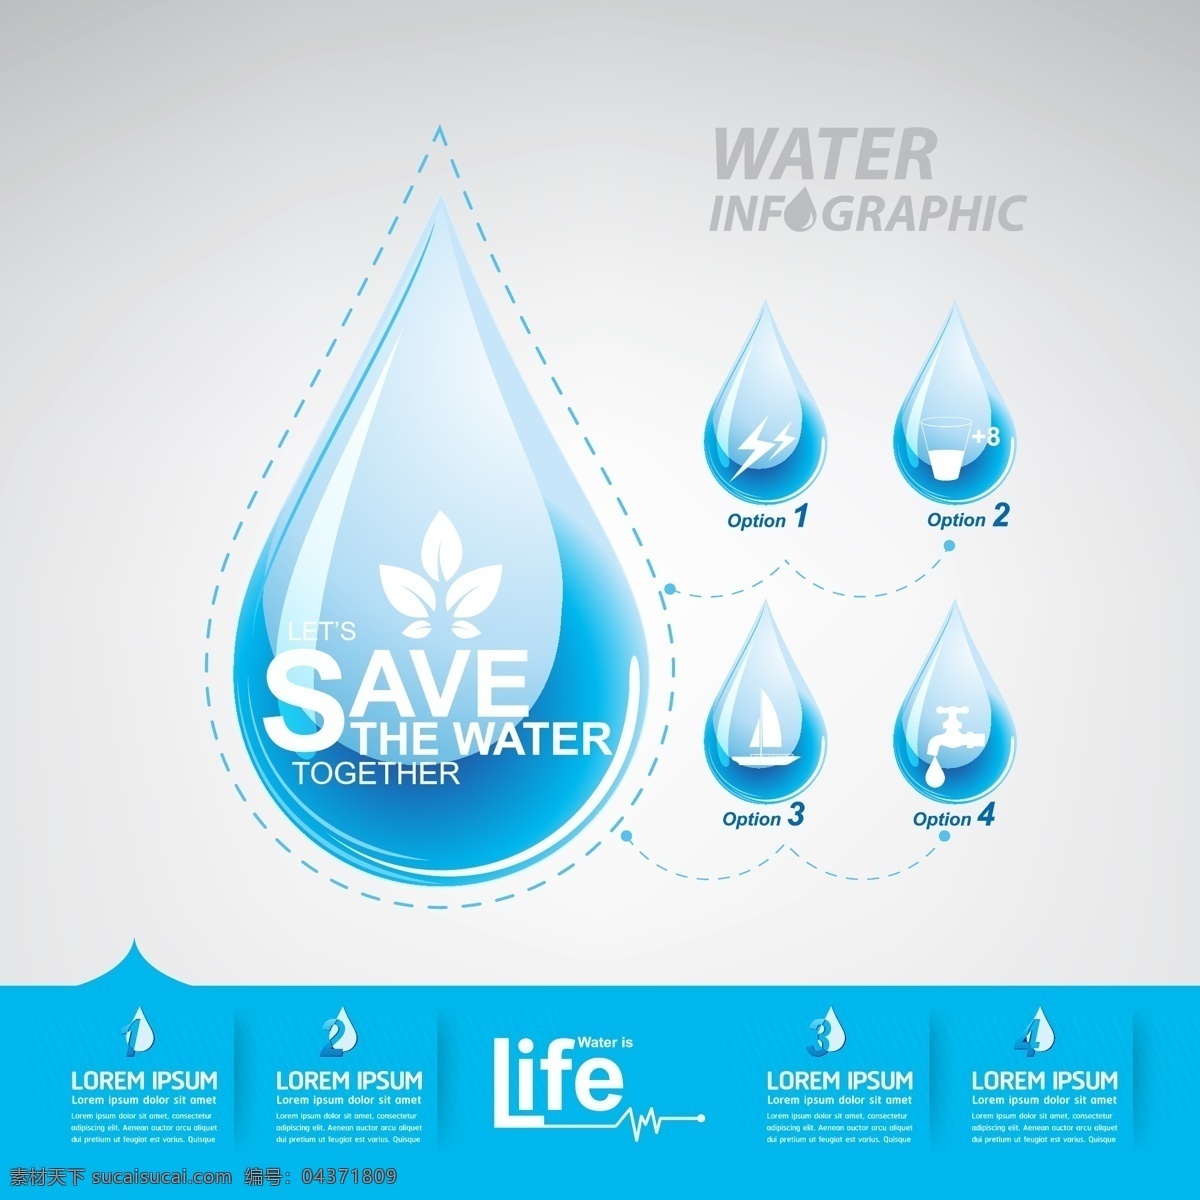 节约 用水 信息 图 水滴 节约用水 信息图 矢量图 格式 矢量 高清图片